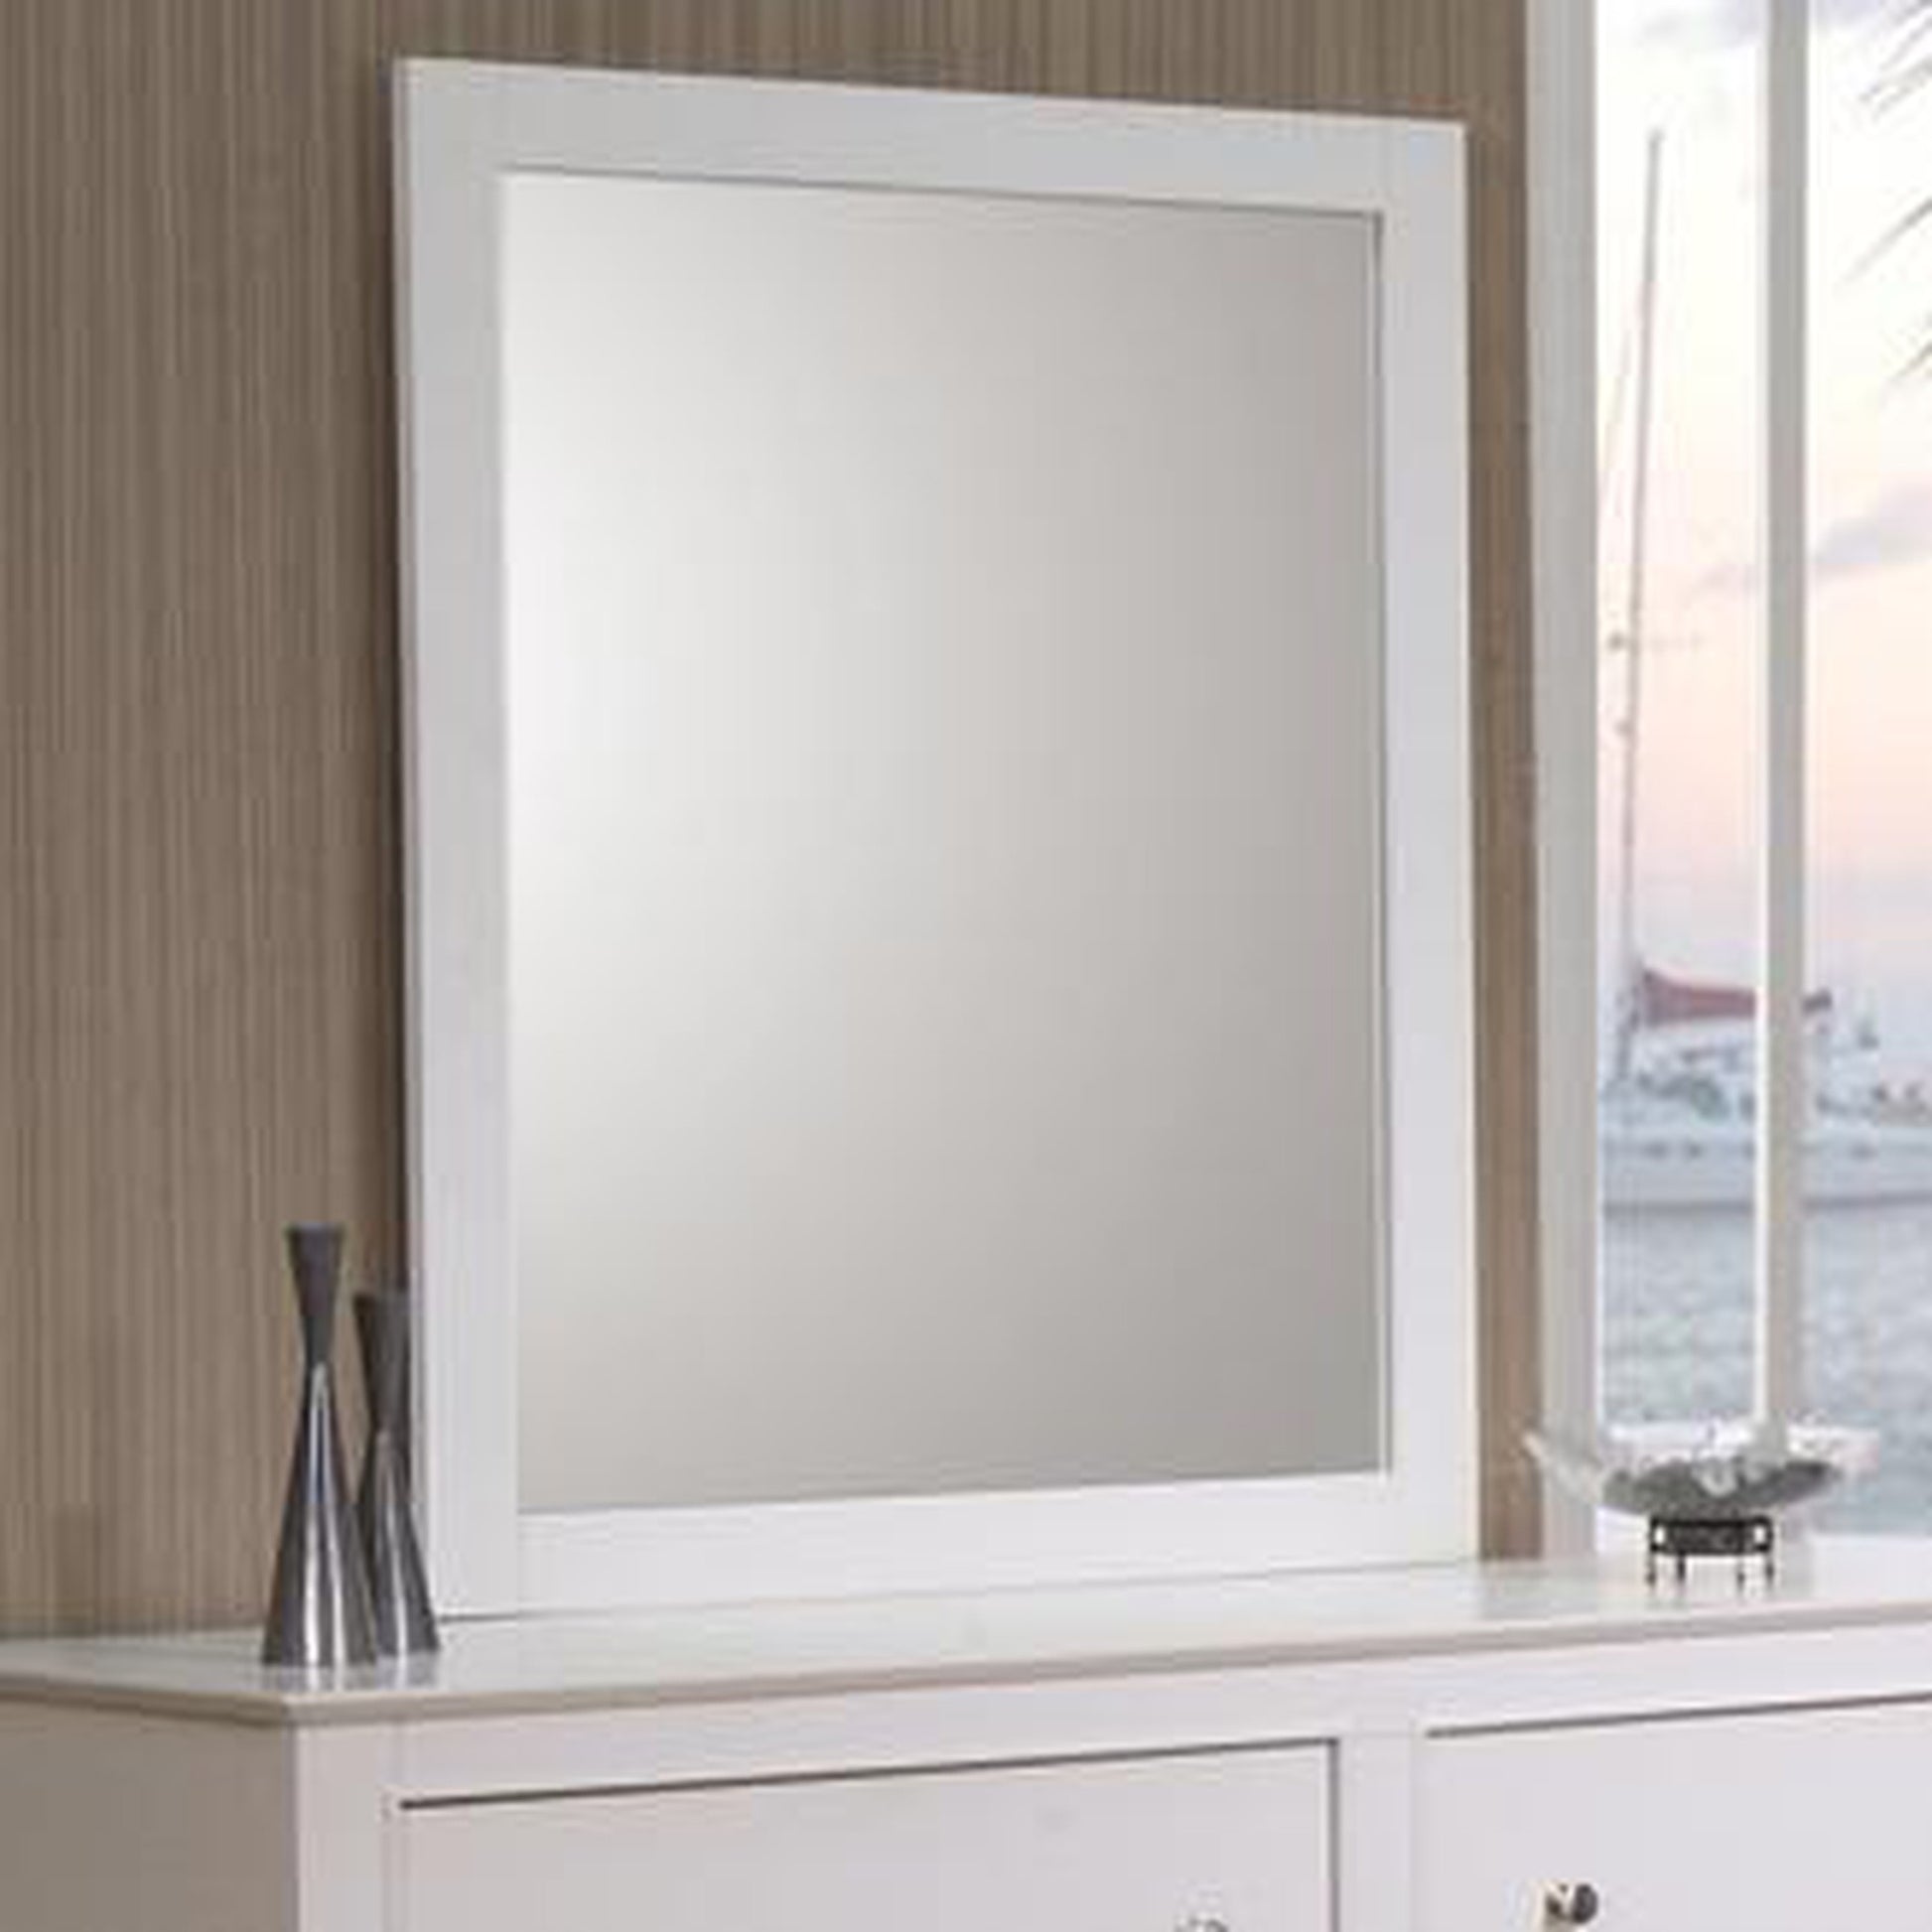 Benzara White Framed Mirror